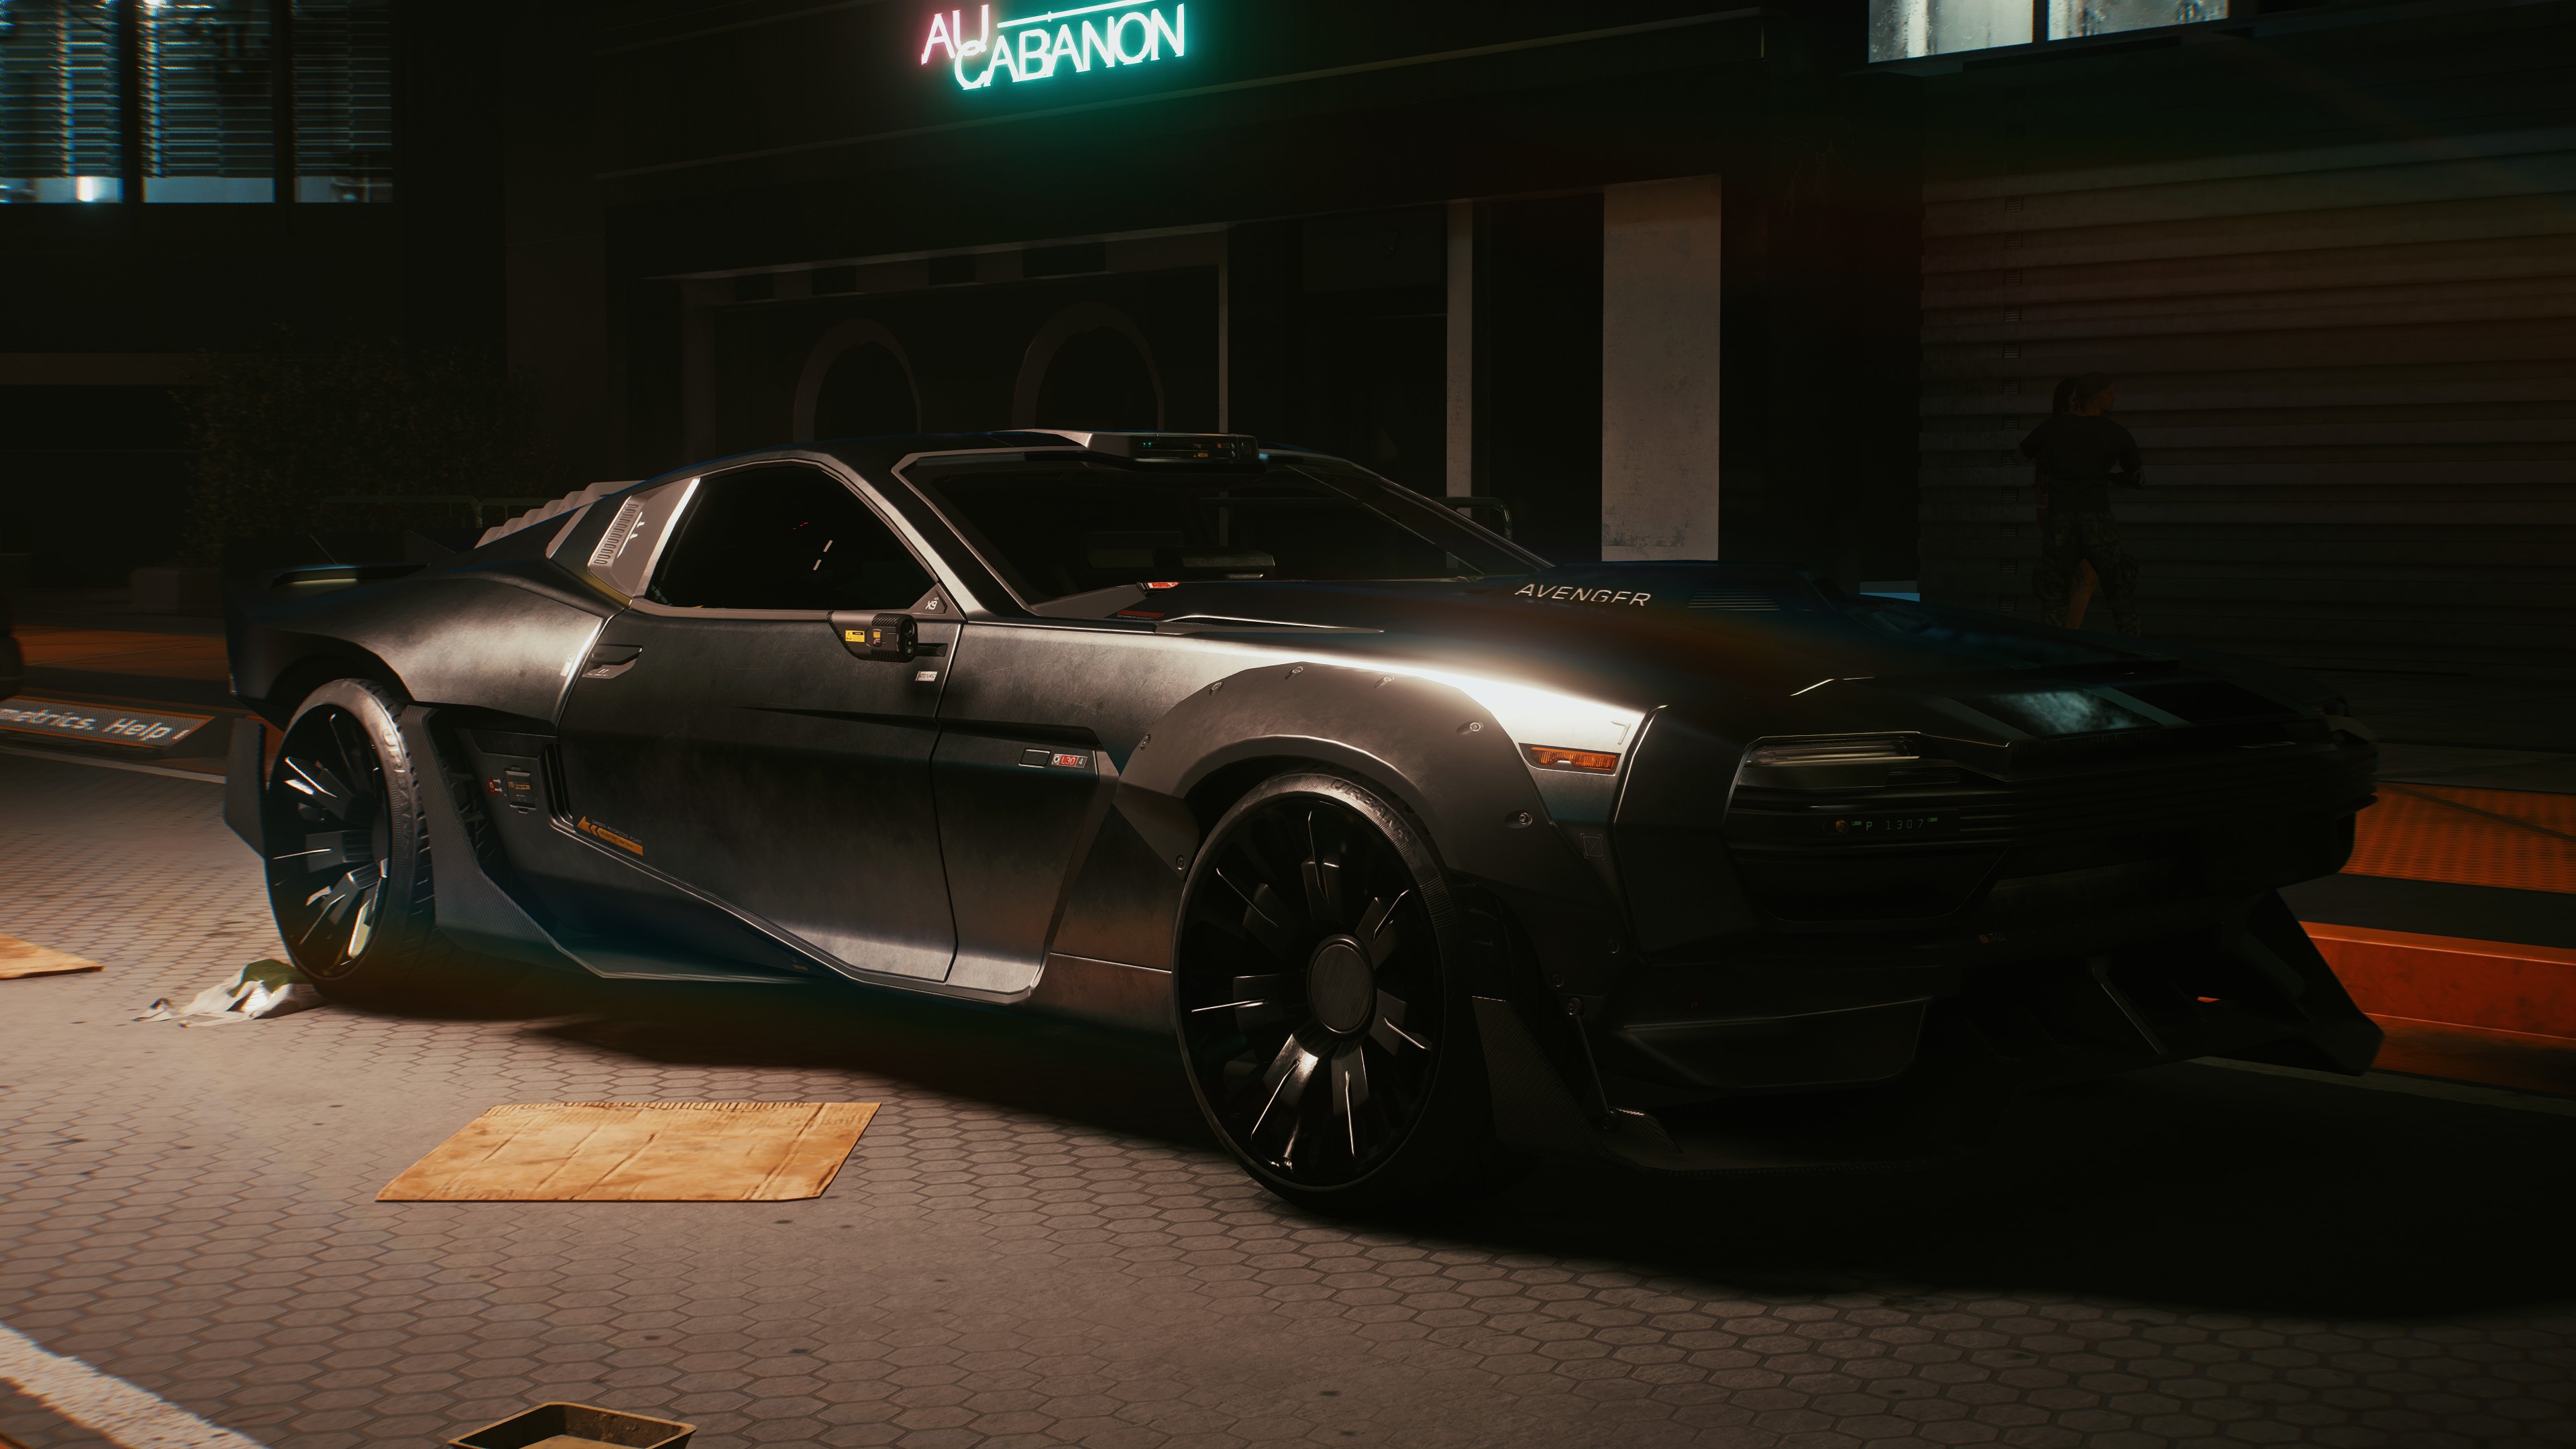 Cyberpunk 2077 Car Vehicle Black Cars Video Games PC Gaming Screen Shot Futuristic 3840x2160